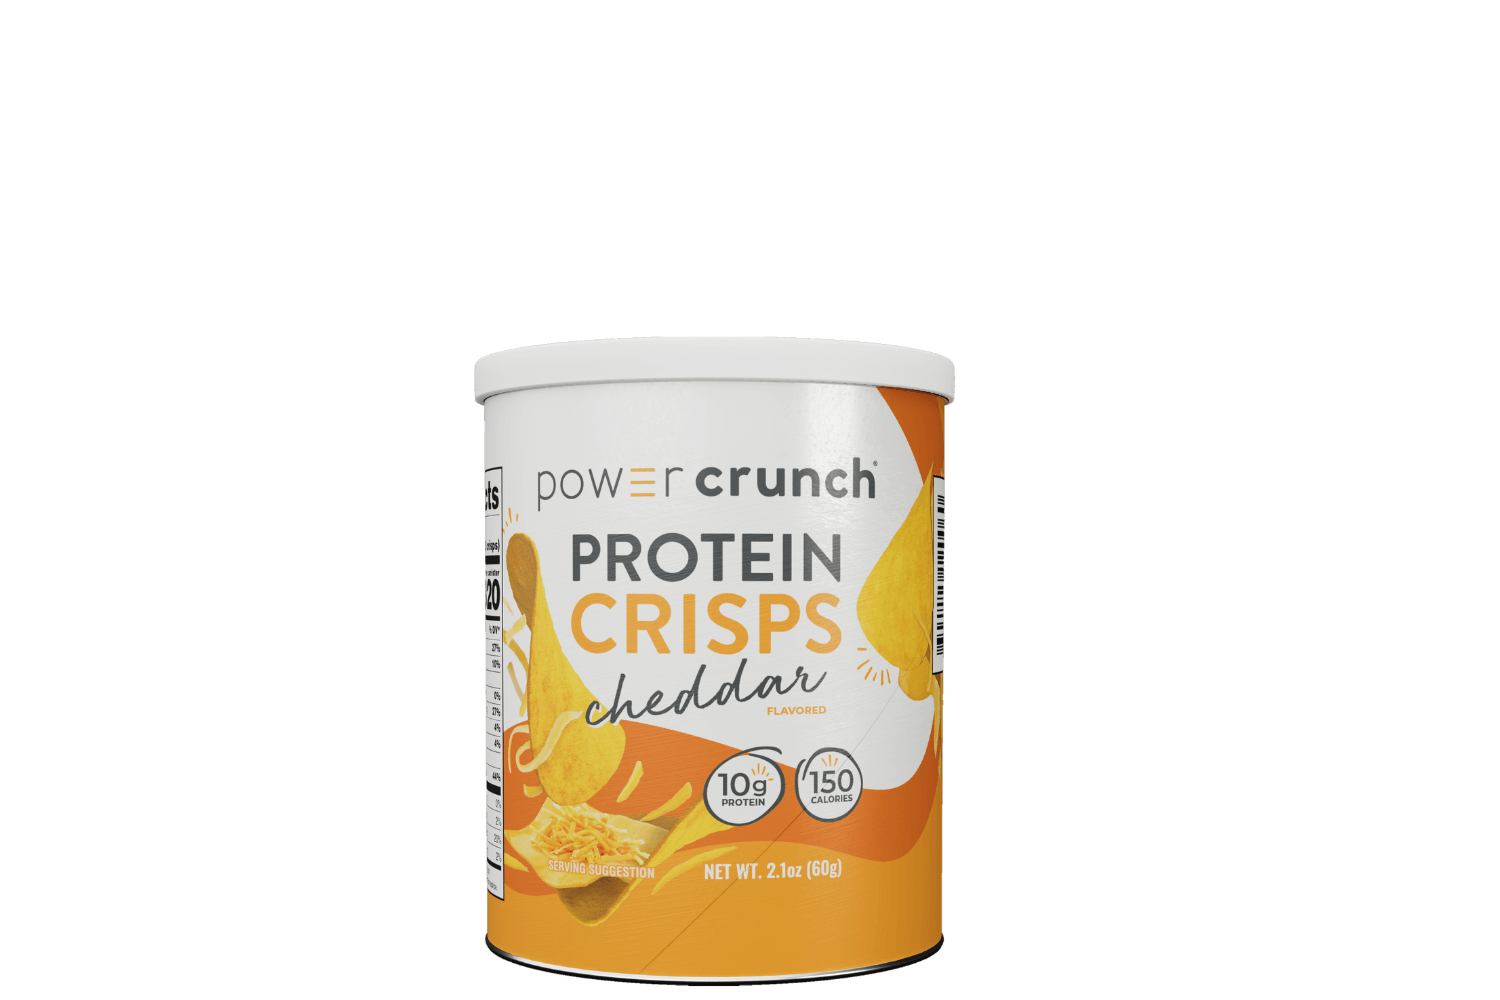 Cheddar Protein Crisps